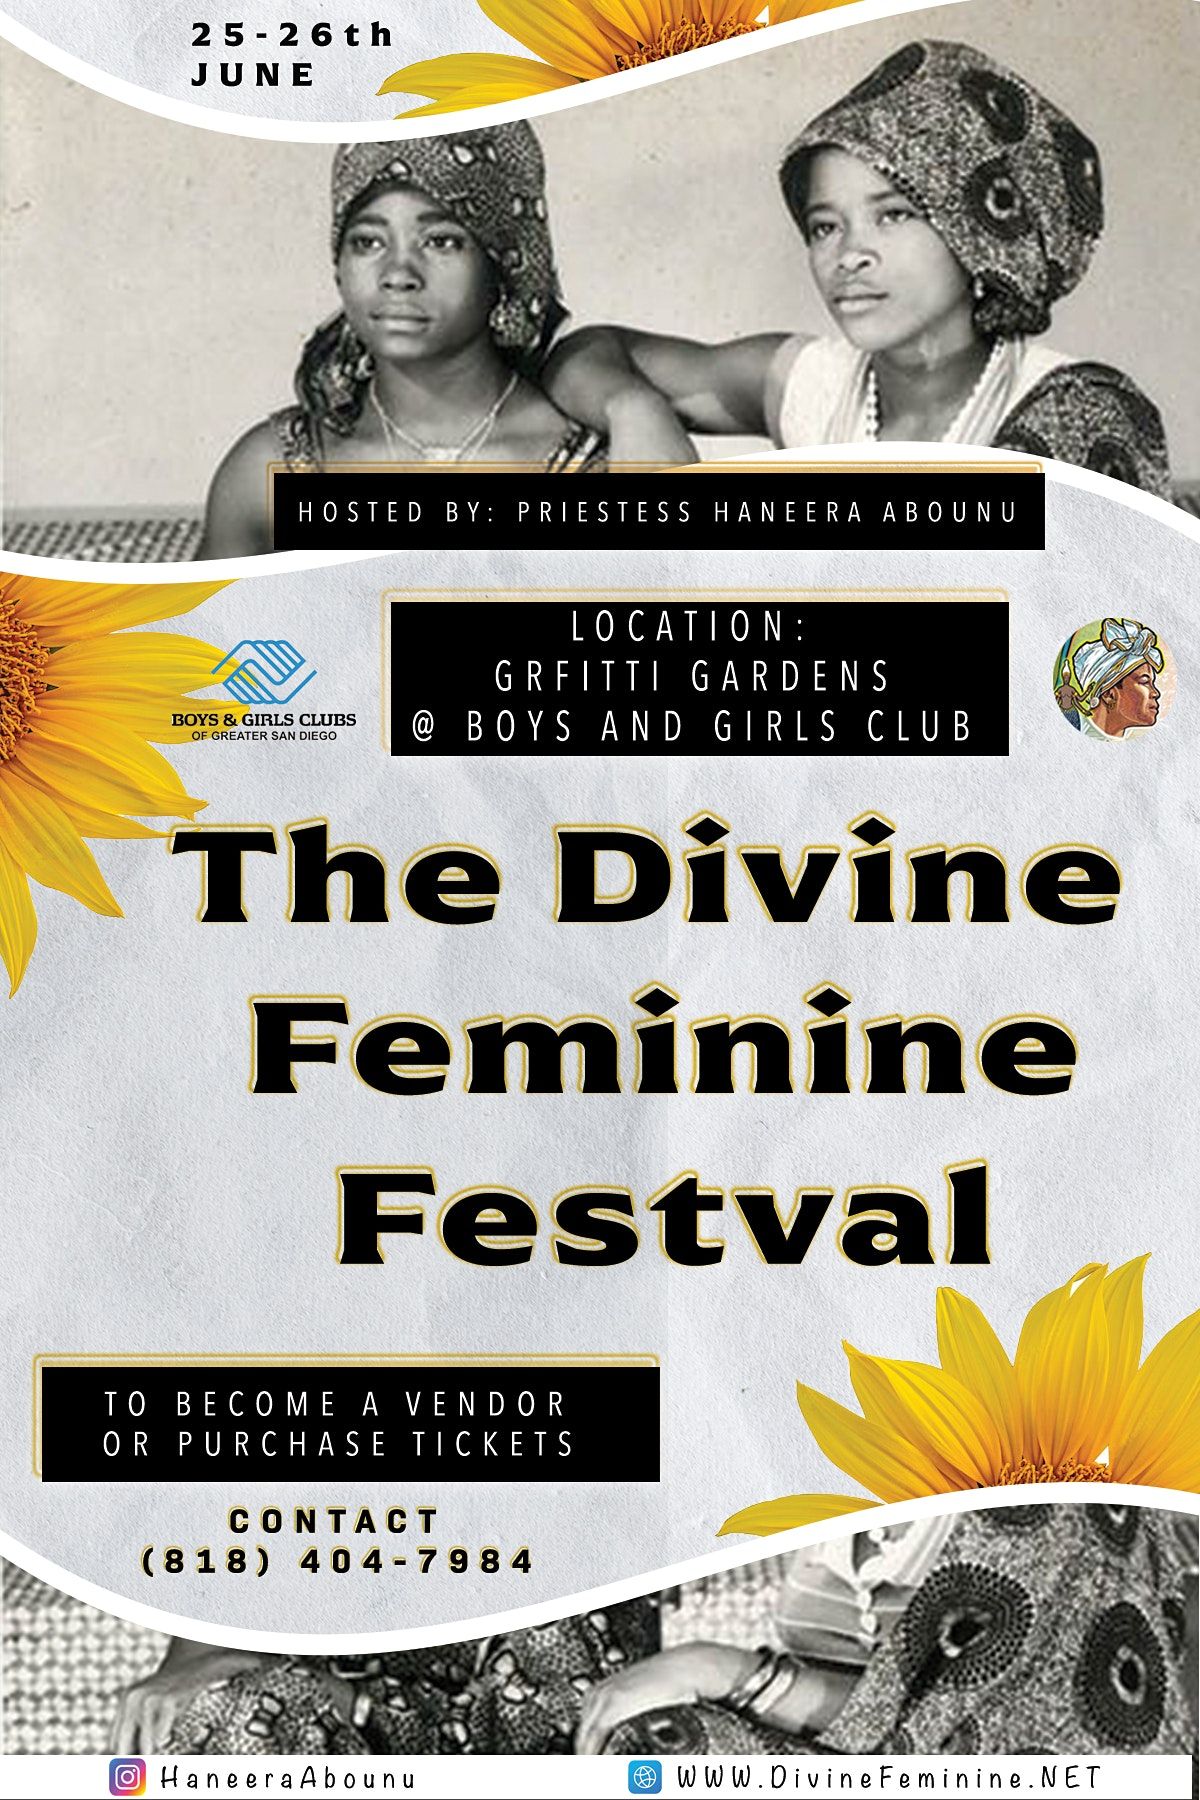 The Divine Feminine Festival